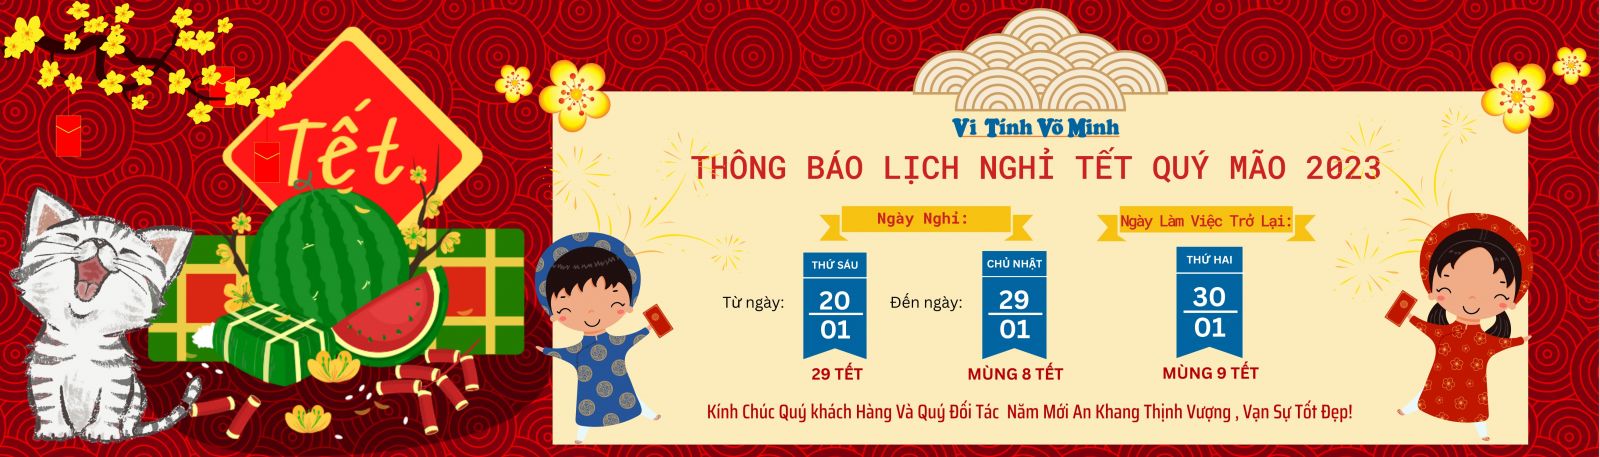 Vi-Tinh-Vo-Minh-Thong-Bao-Lich-Nghi-Tet-Nguyen-Dan-2023